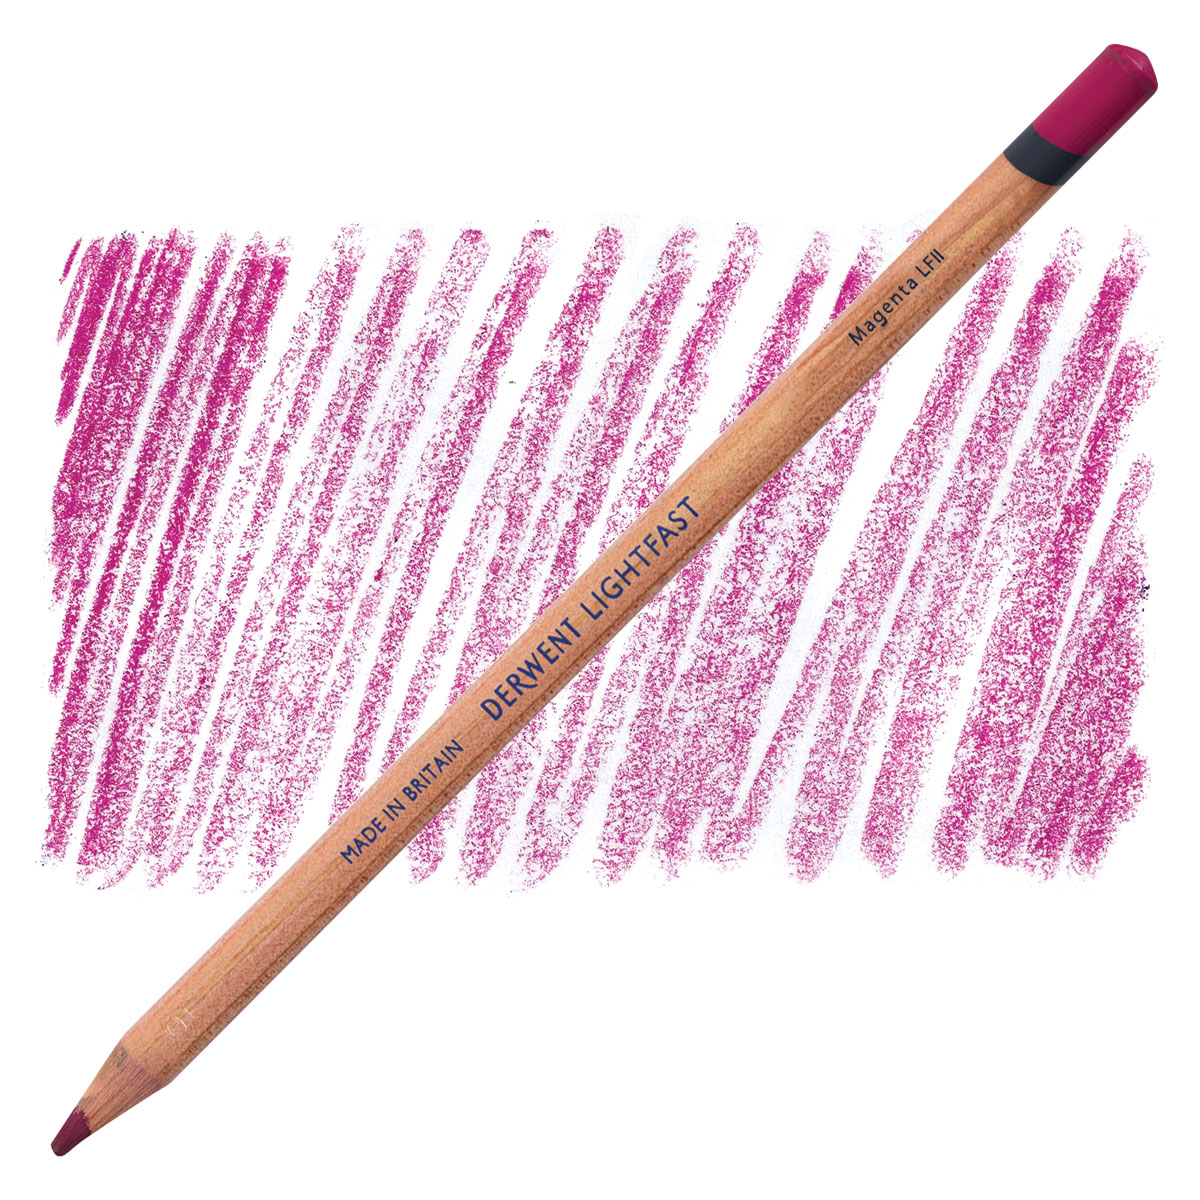 Derwent Lightfast Color Pencil Sets - Meininger Art Supply